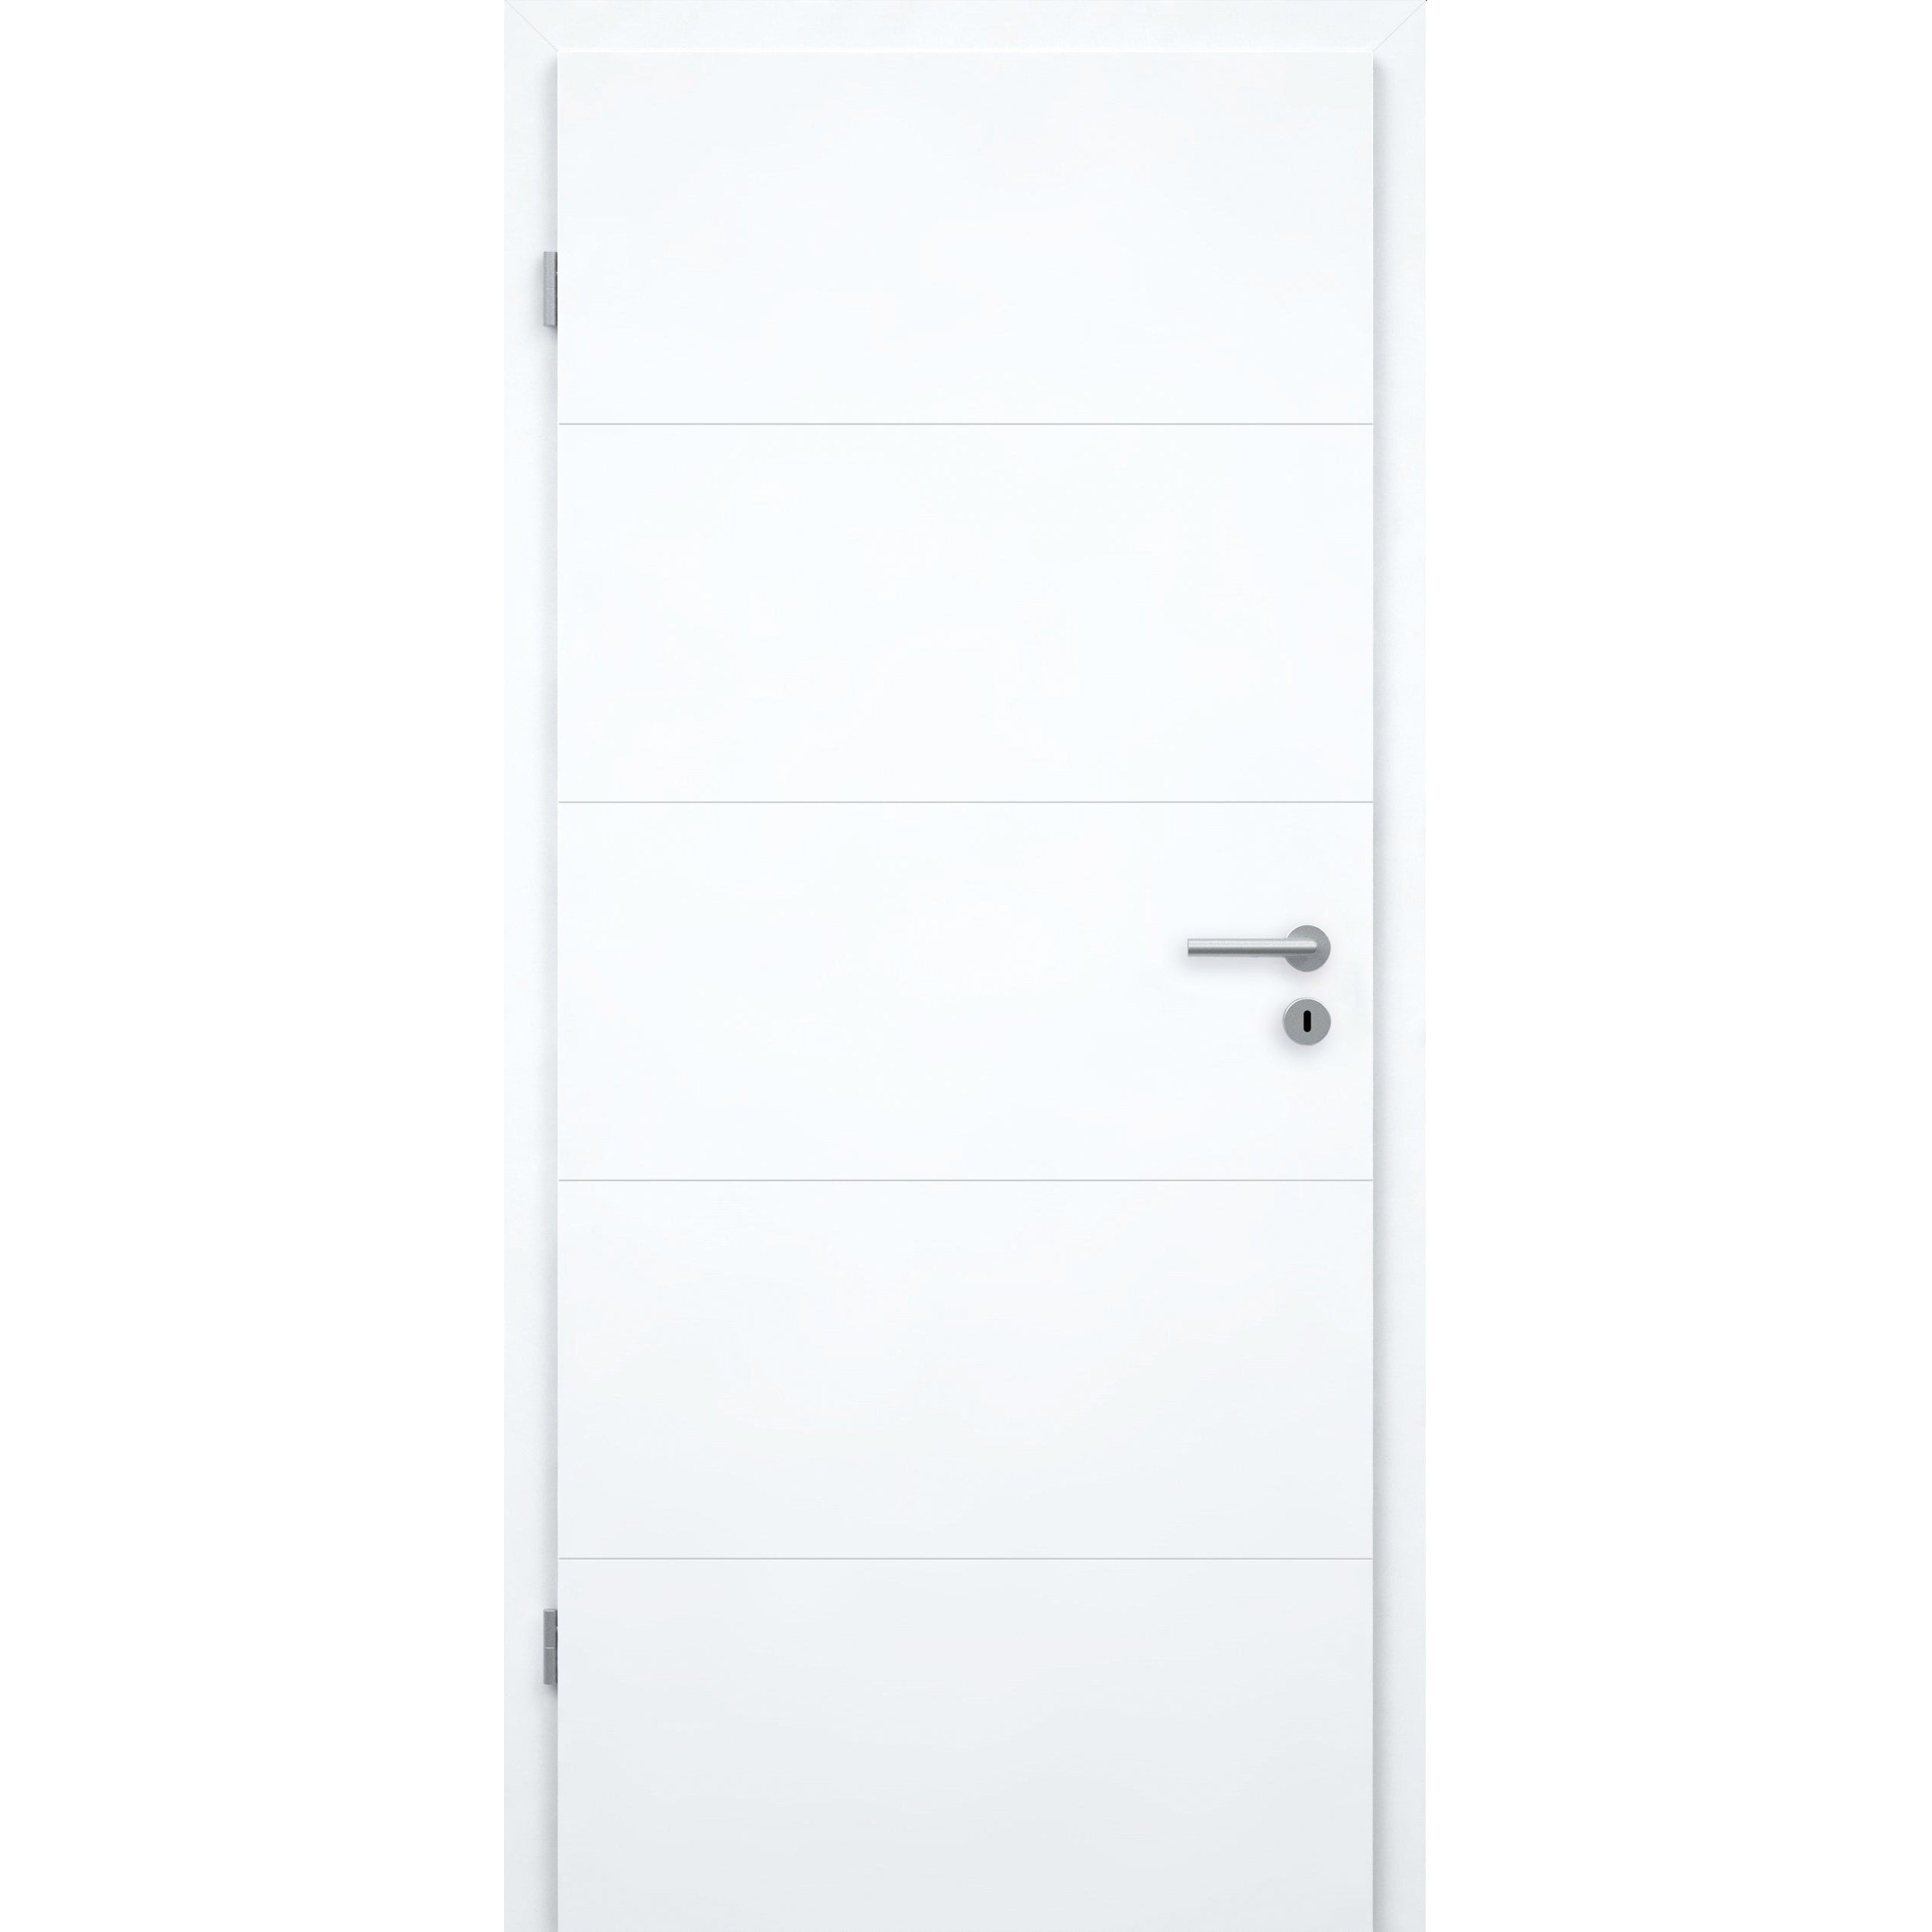 Zimmertür mit Zarge brillant-weiß modern mit 4 Rillen Designkante - Modell Designtür Q43